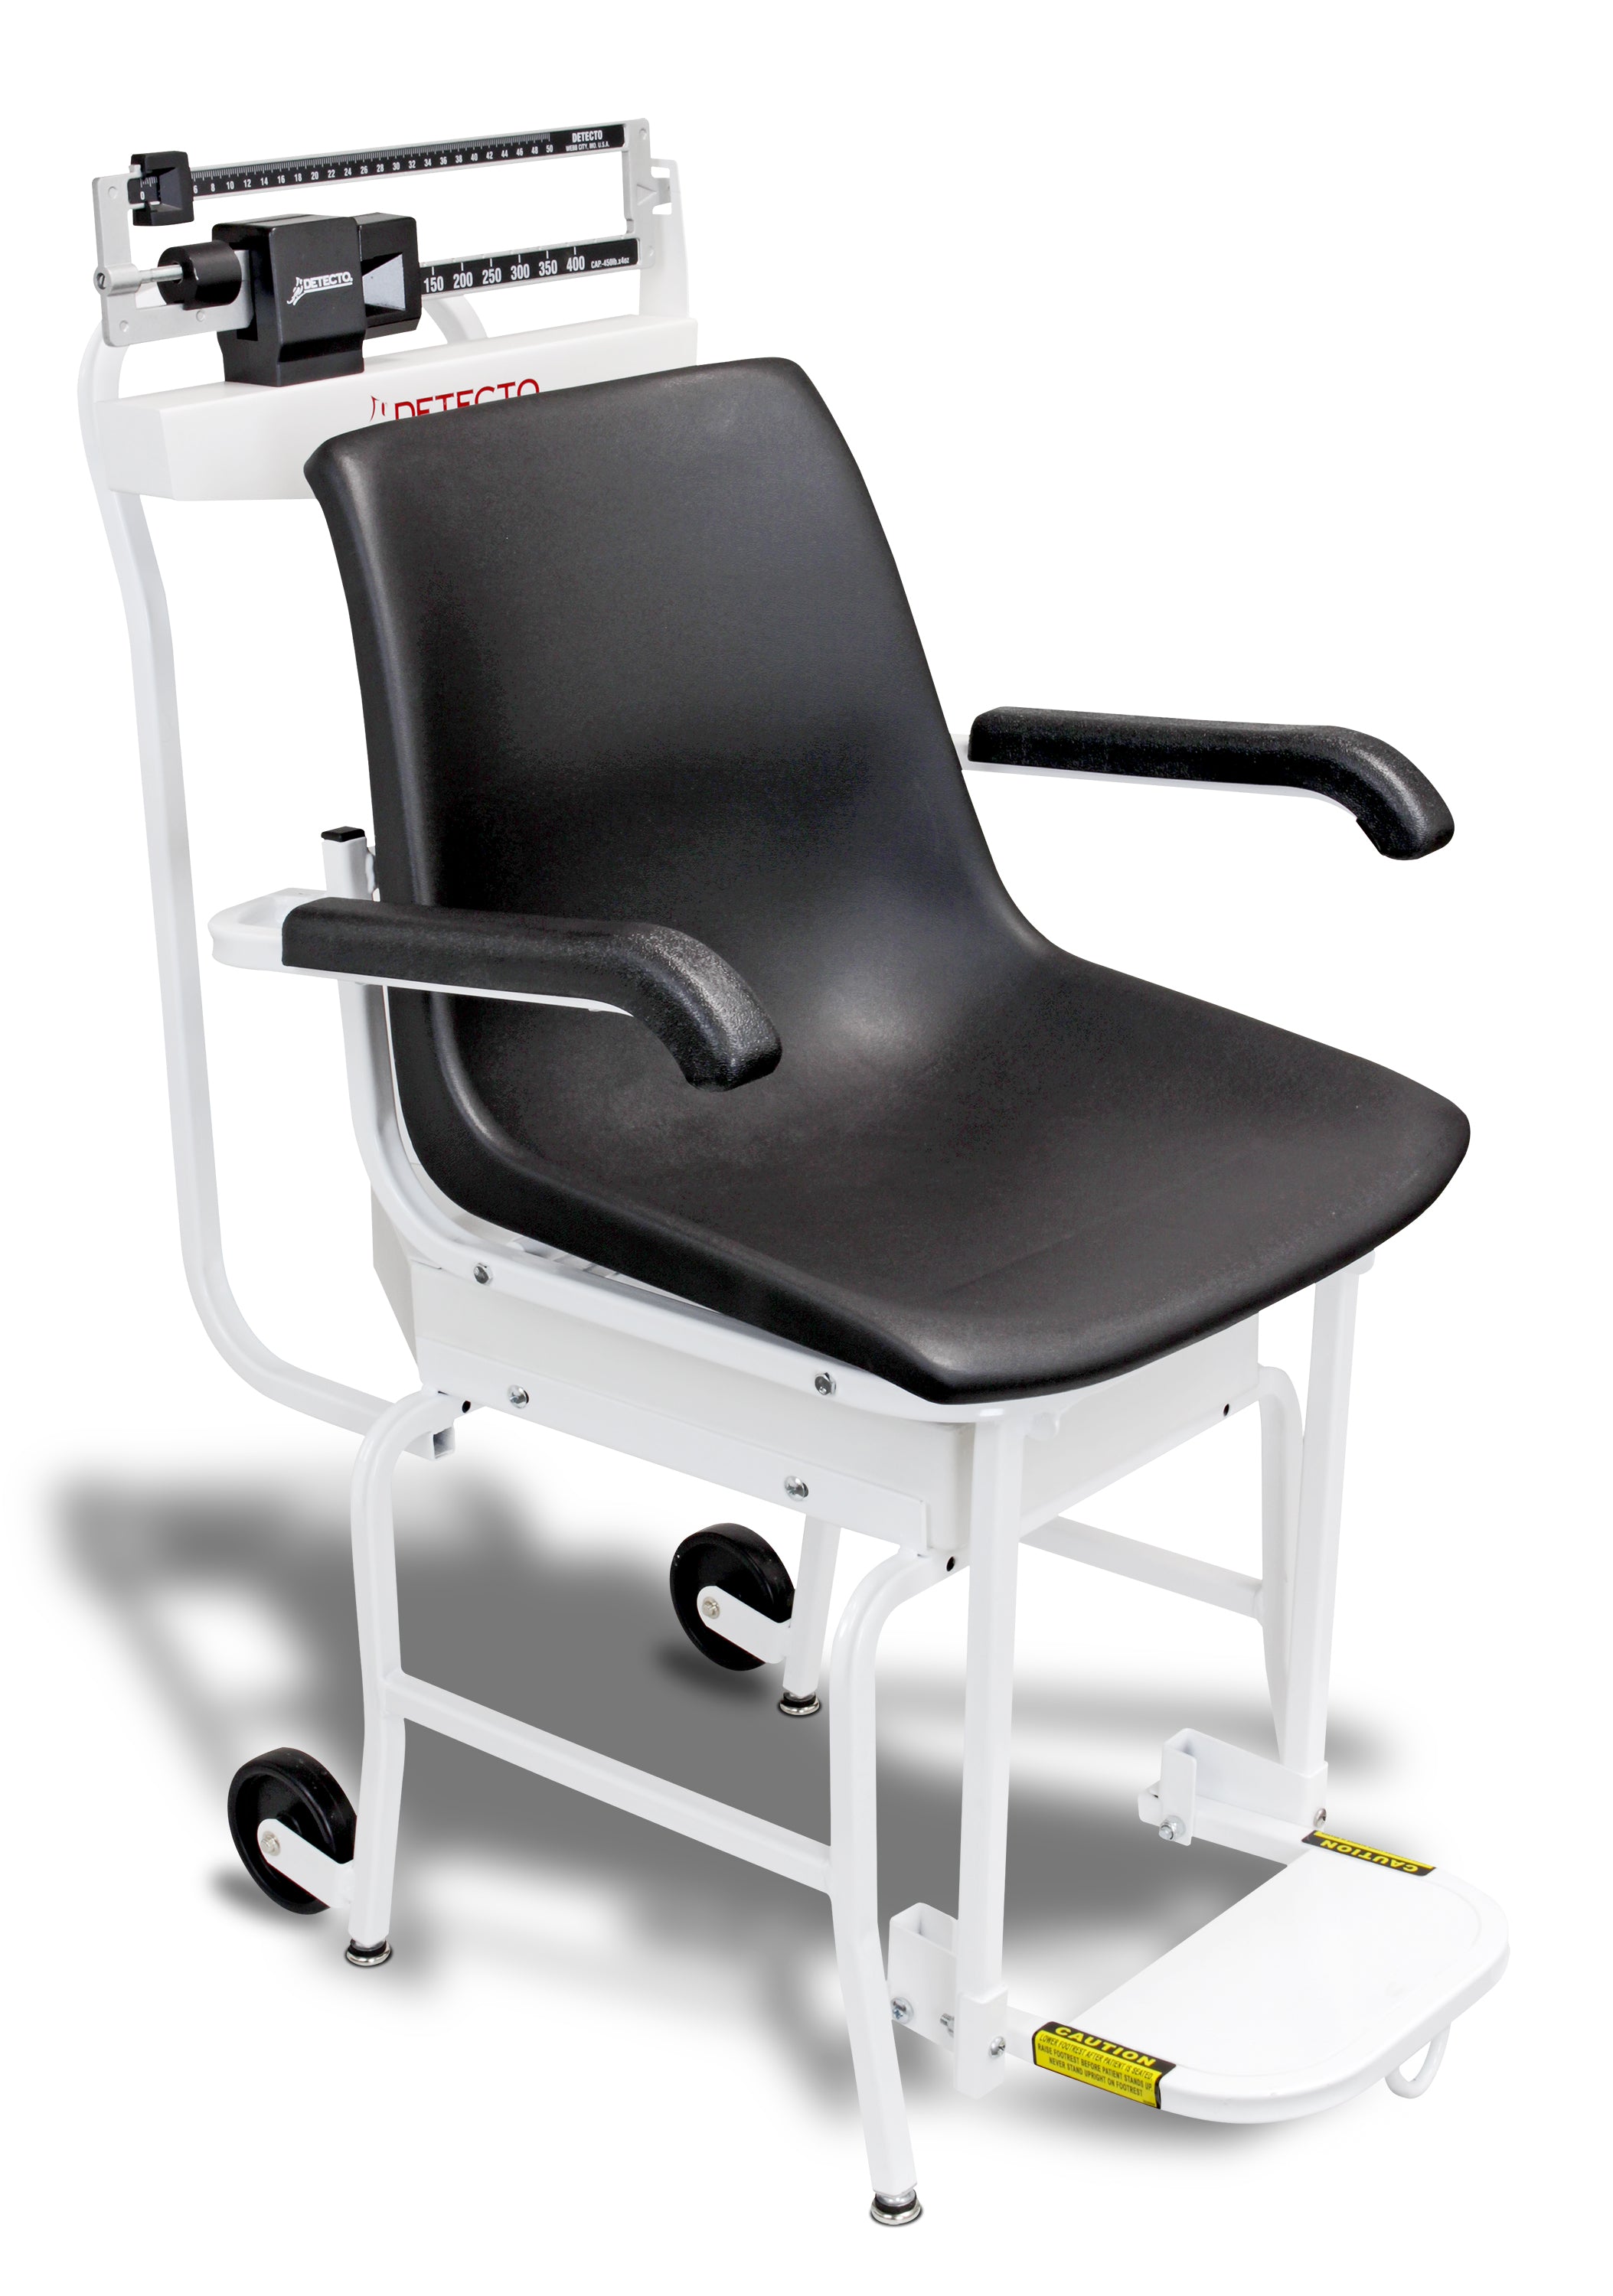 Detecto 4751 Chair Scale, Weighbeam, 440 lb x 4 oz / 200 kg x 100 g